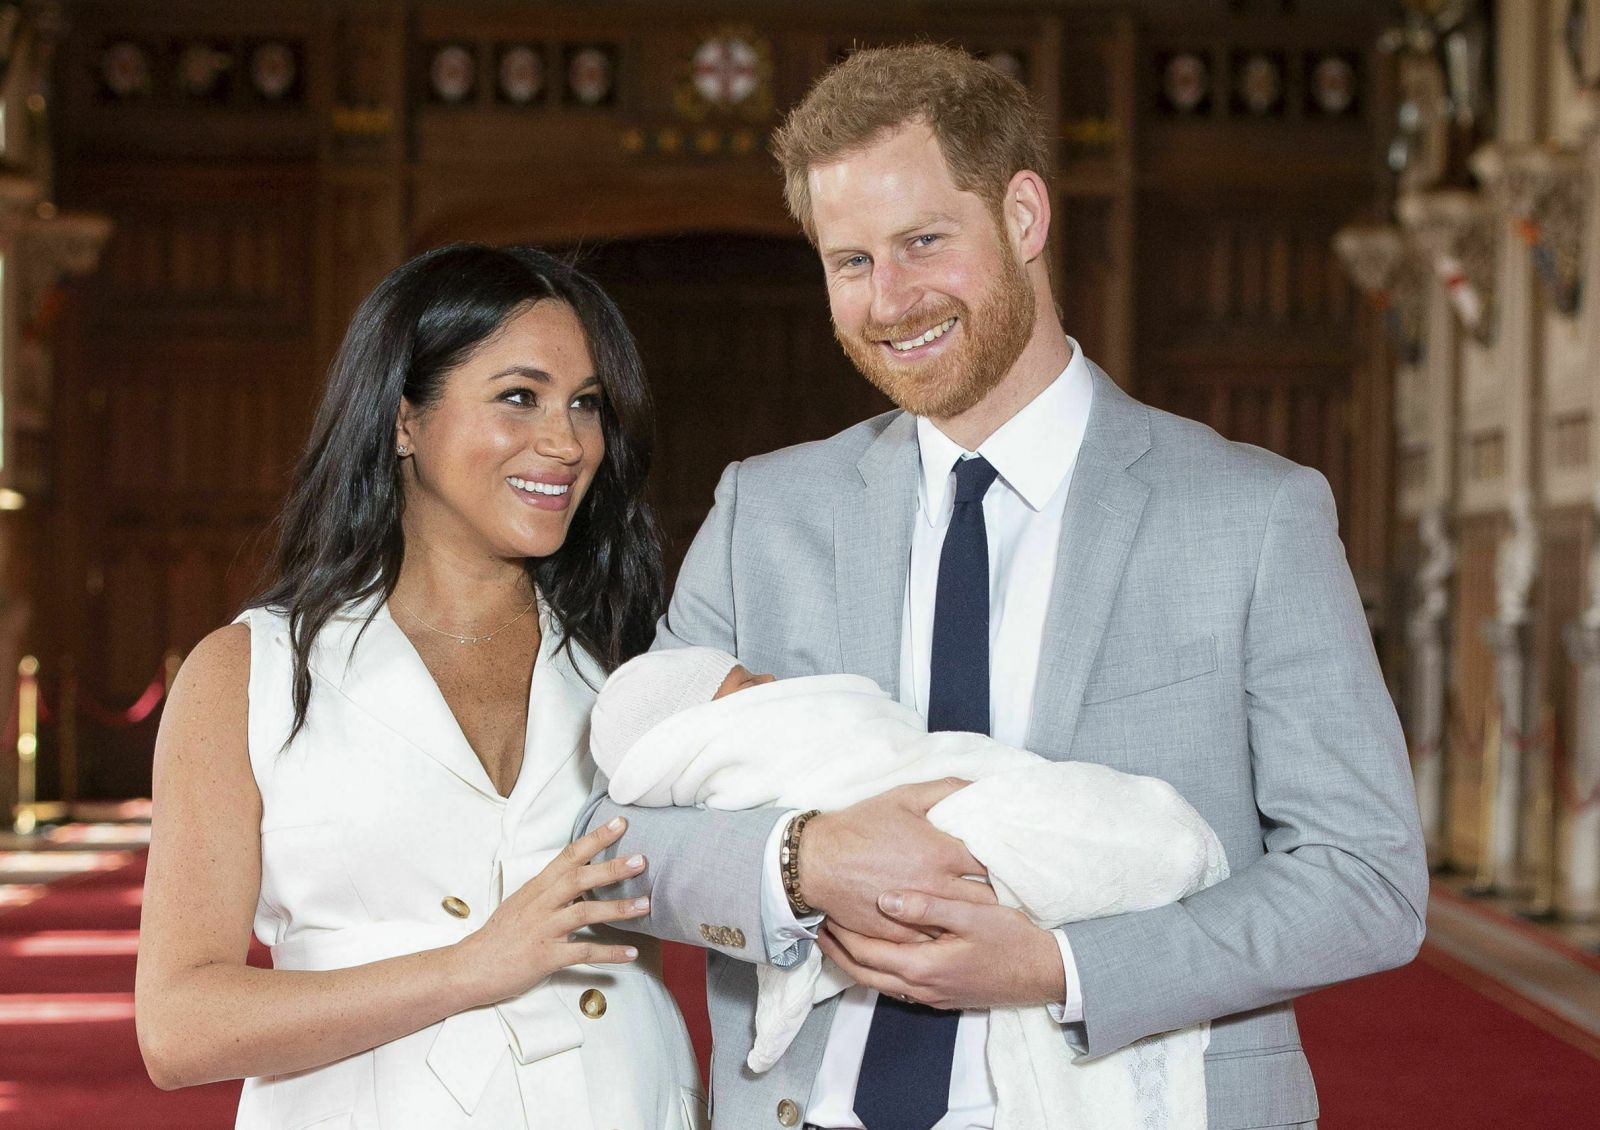 Princ Harry plánuje jen dvě děti. Má obavy o budoucnost naší planety